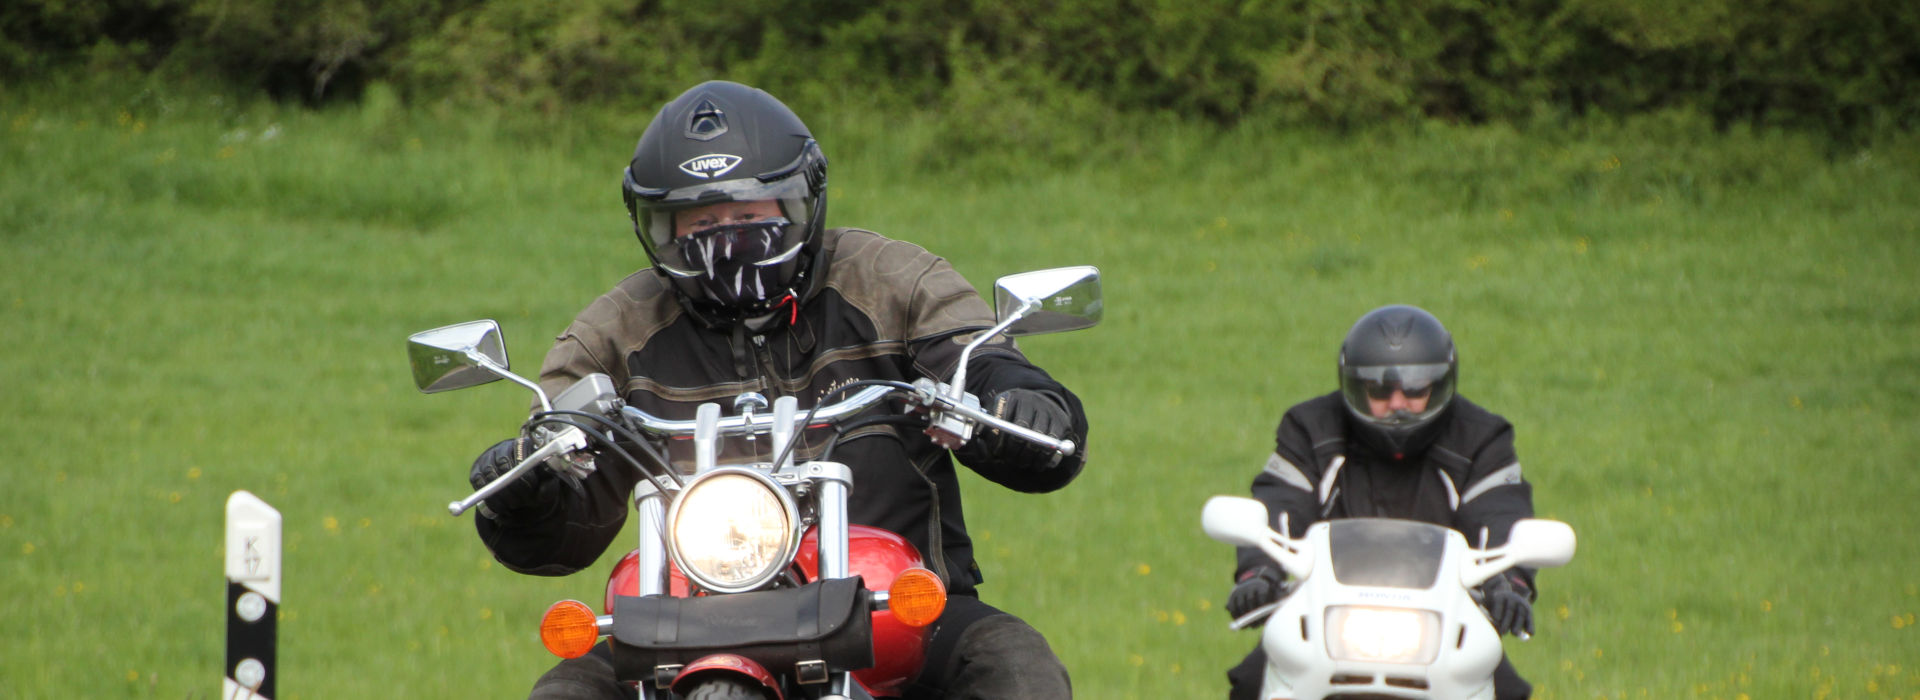 Motorrijschool Motorrijbewijspoint Weesp motorrijlessen